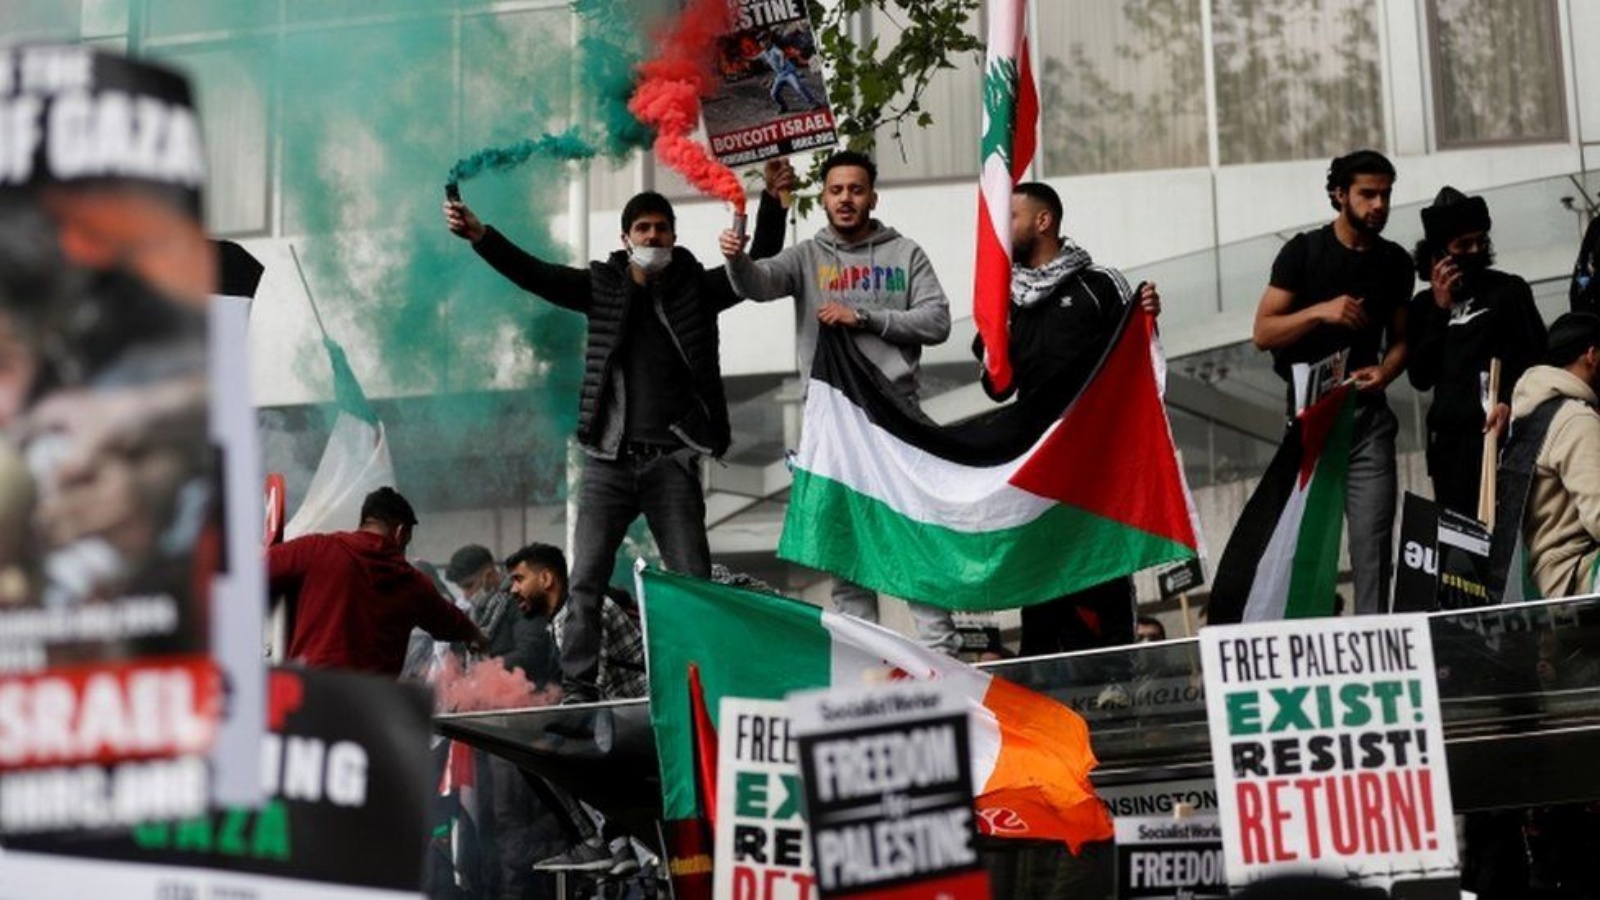 جانب من مظاهرة مؤيدة للفلسطينيين في لندن الاسبوع الماضي